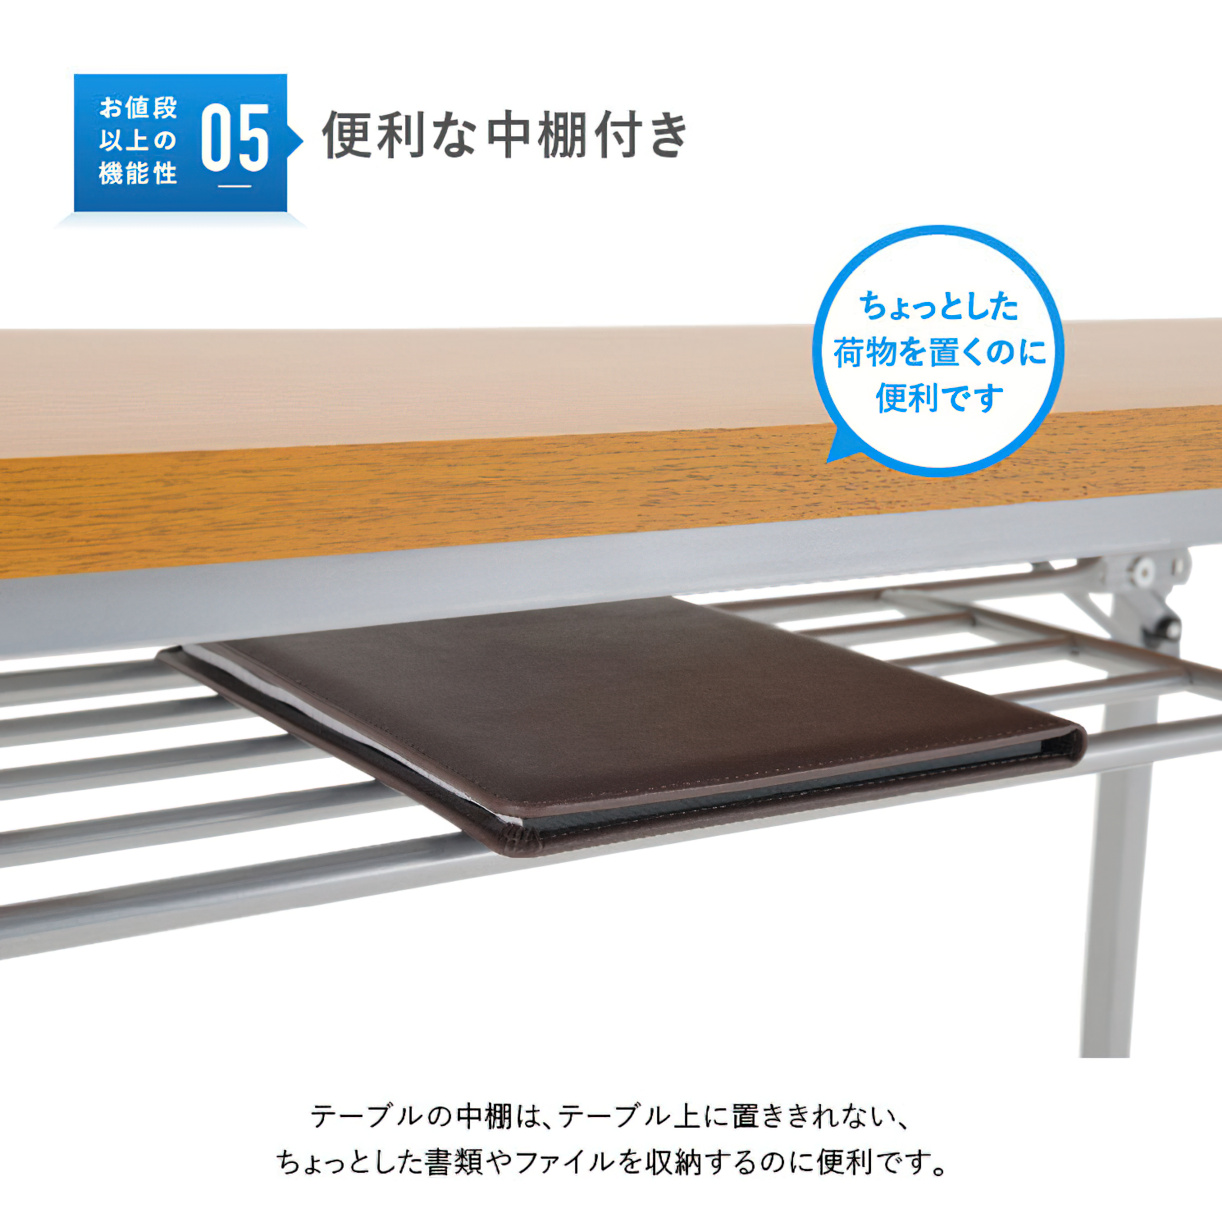 14622円 【即納】 折り畳み会議テーブル 高さ調節機能付 棚付き KG-1845T